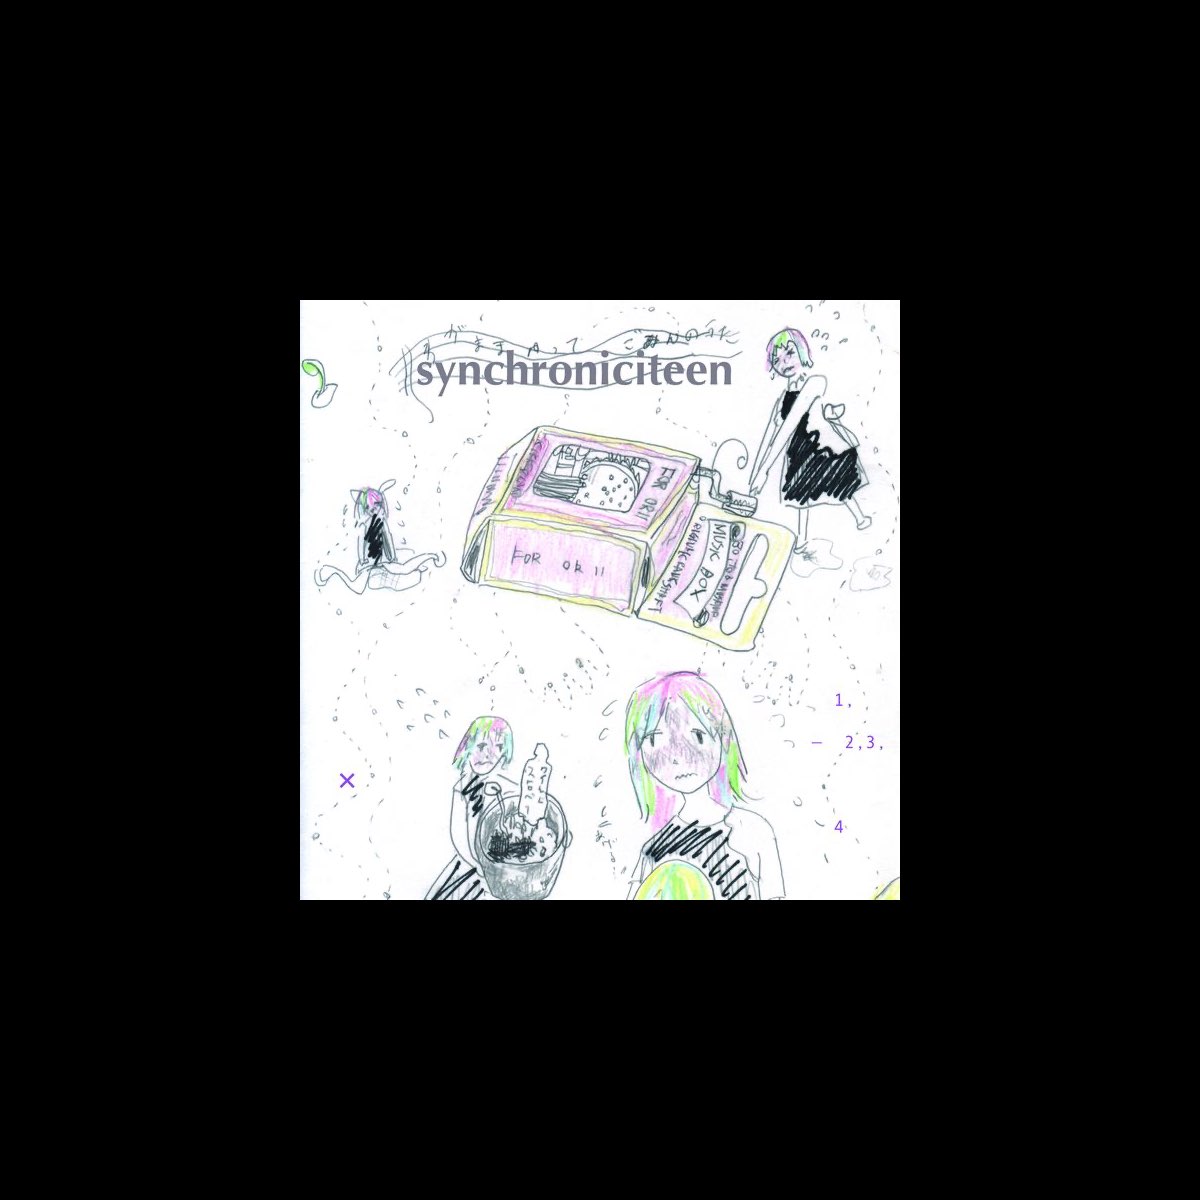 シンクロニシティーン - 相対性理論のアルバム - Apple Music